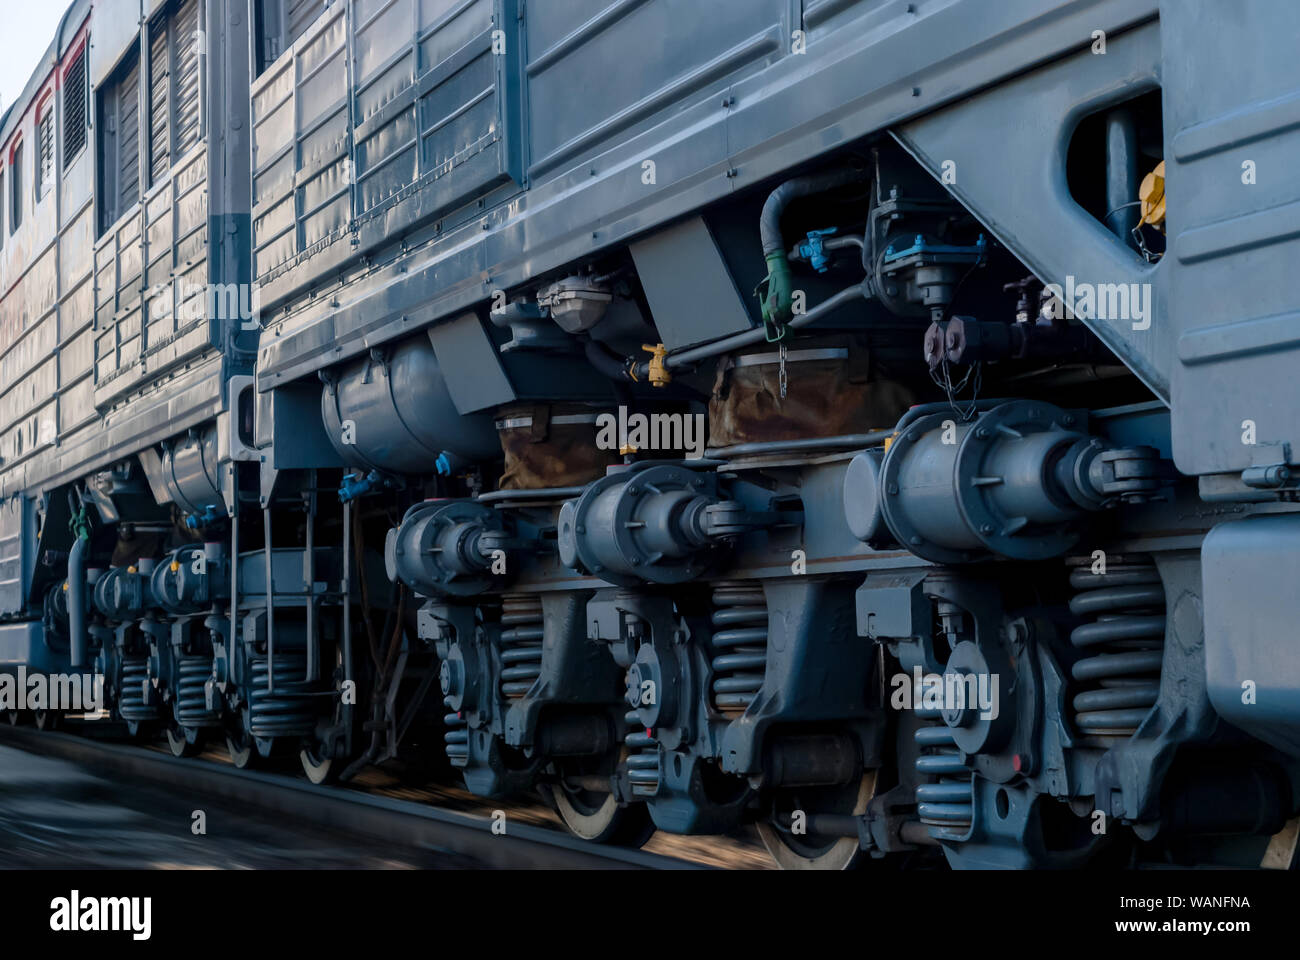 Frammento di un soleggiato moderno locomotore su di una pista con carrello telai estendentisi in prospettiva Foto Stock